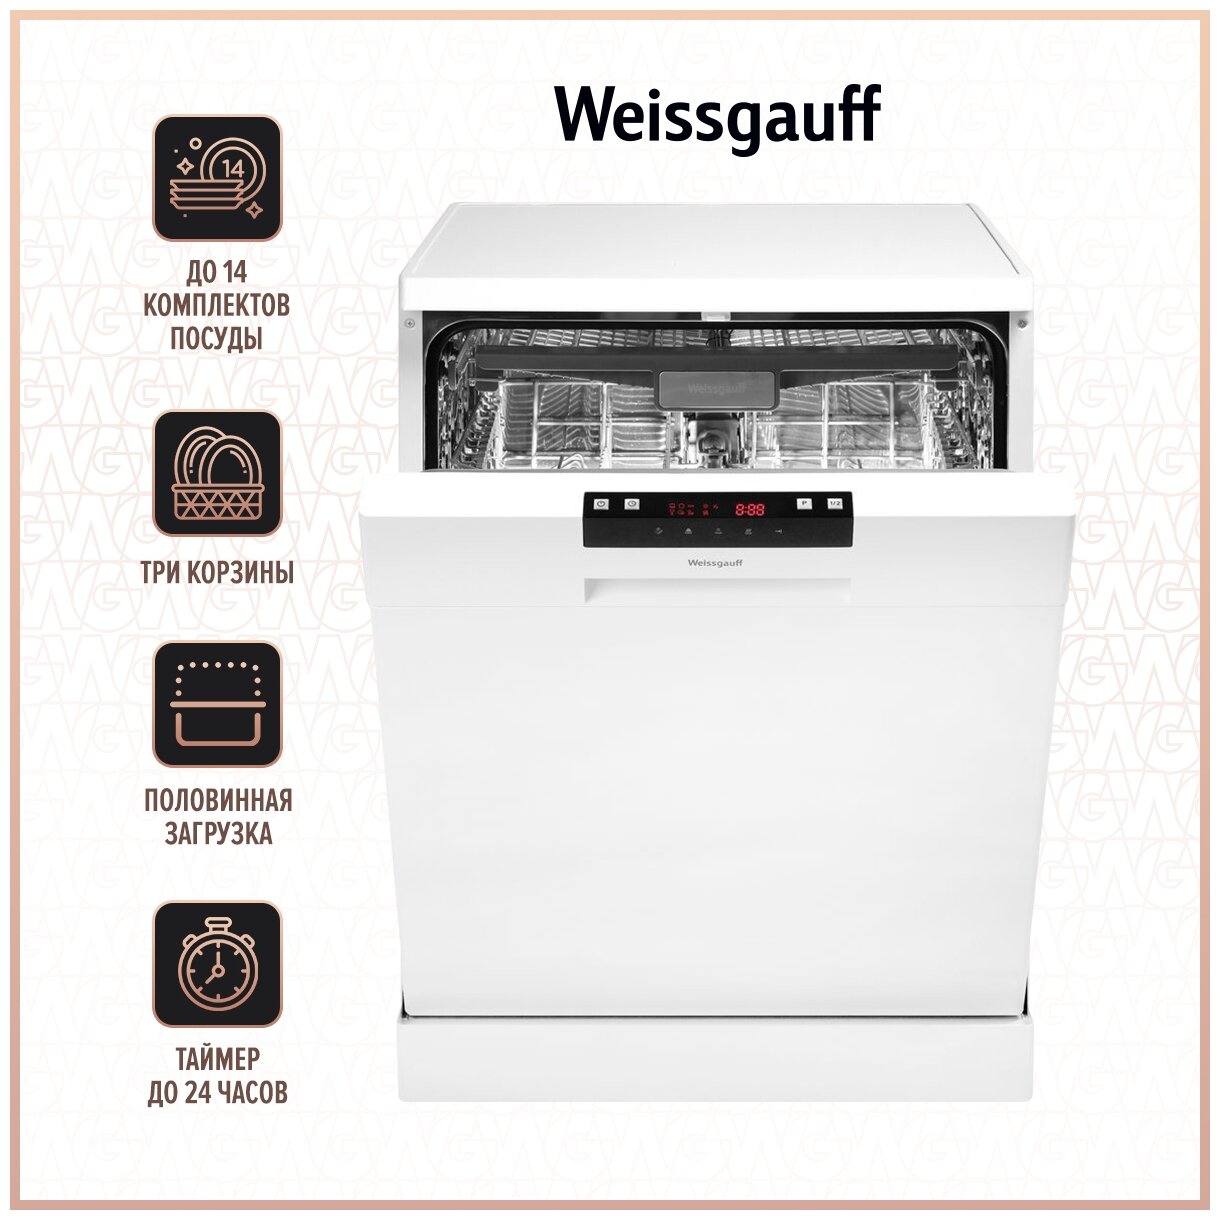 Посудомоечная машина WEISSGAUFF DW 6035, полноразмерная, напольная, 59.8см, загрузка 14 комплектов, белая [426330]